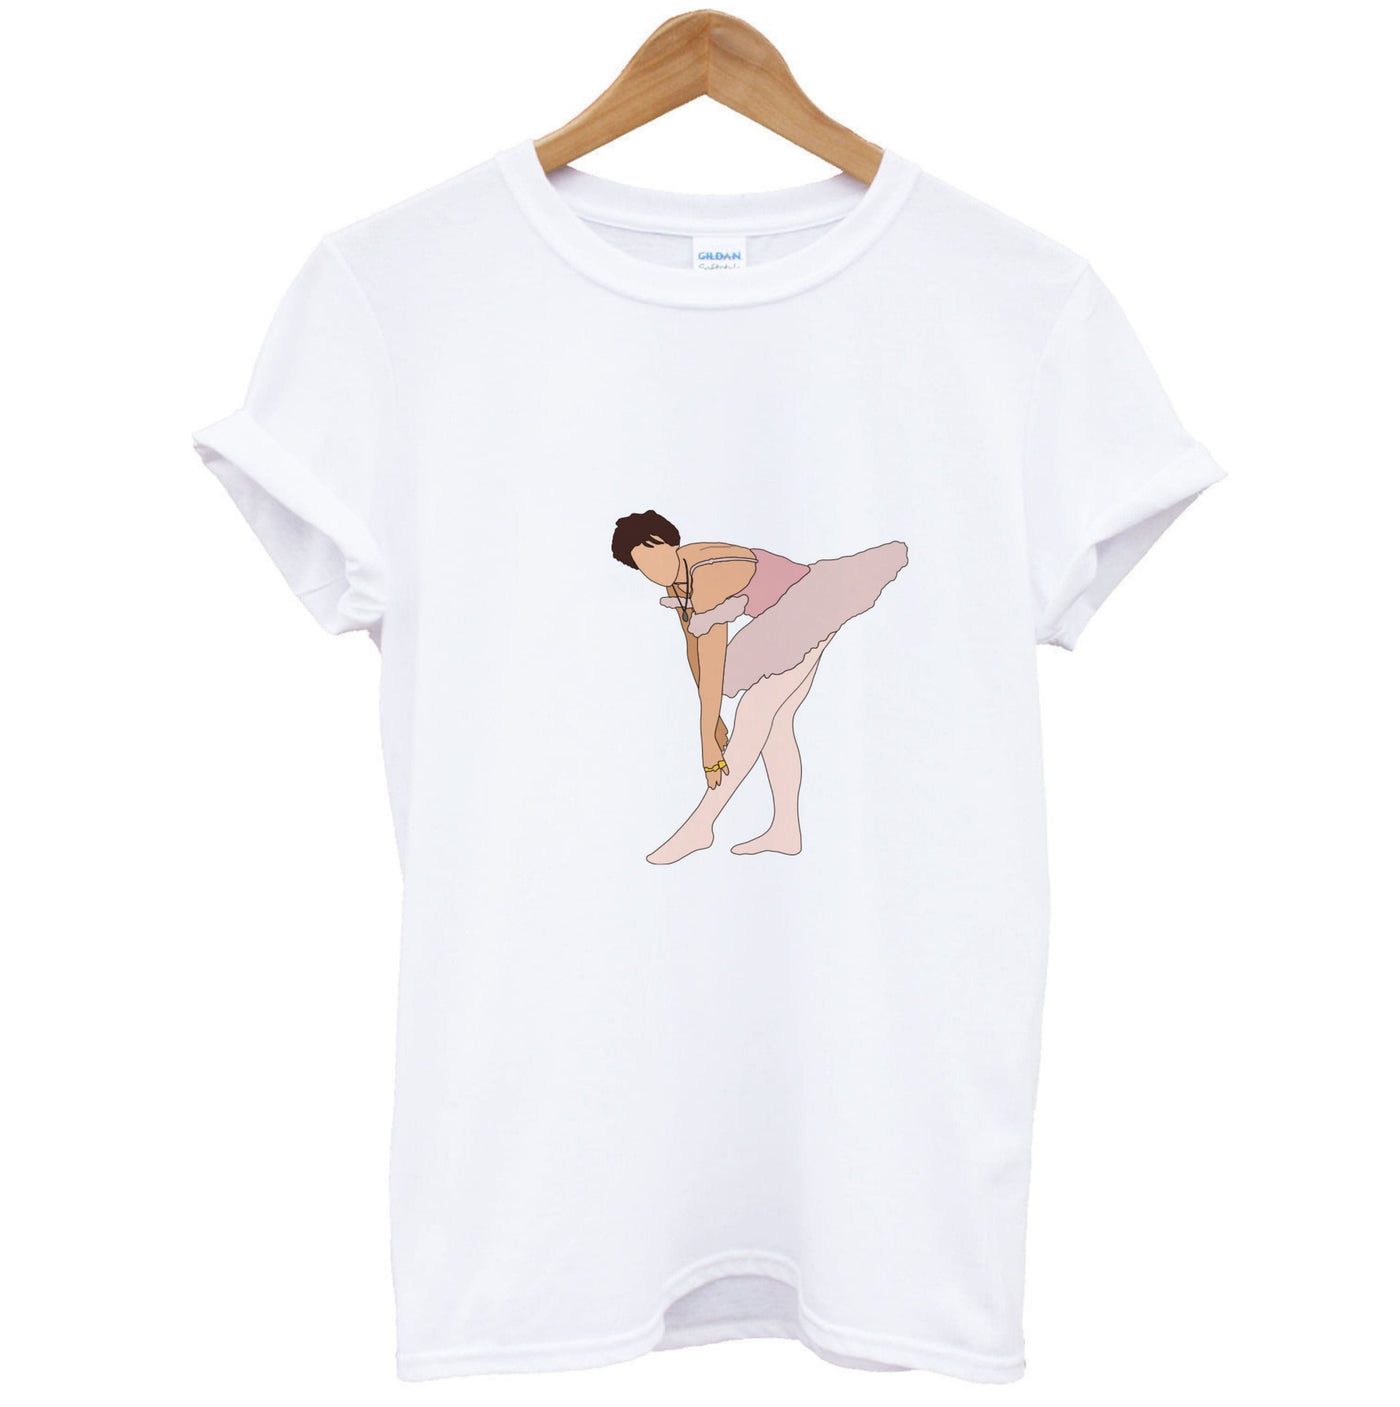 Ballerina - Harry T-Shirt